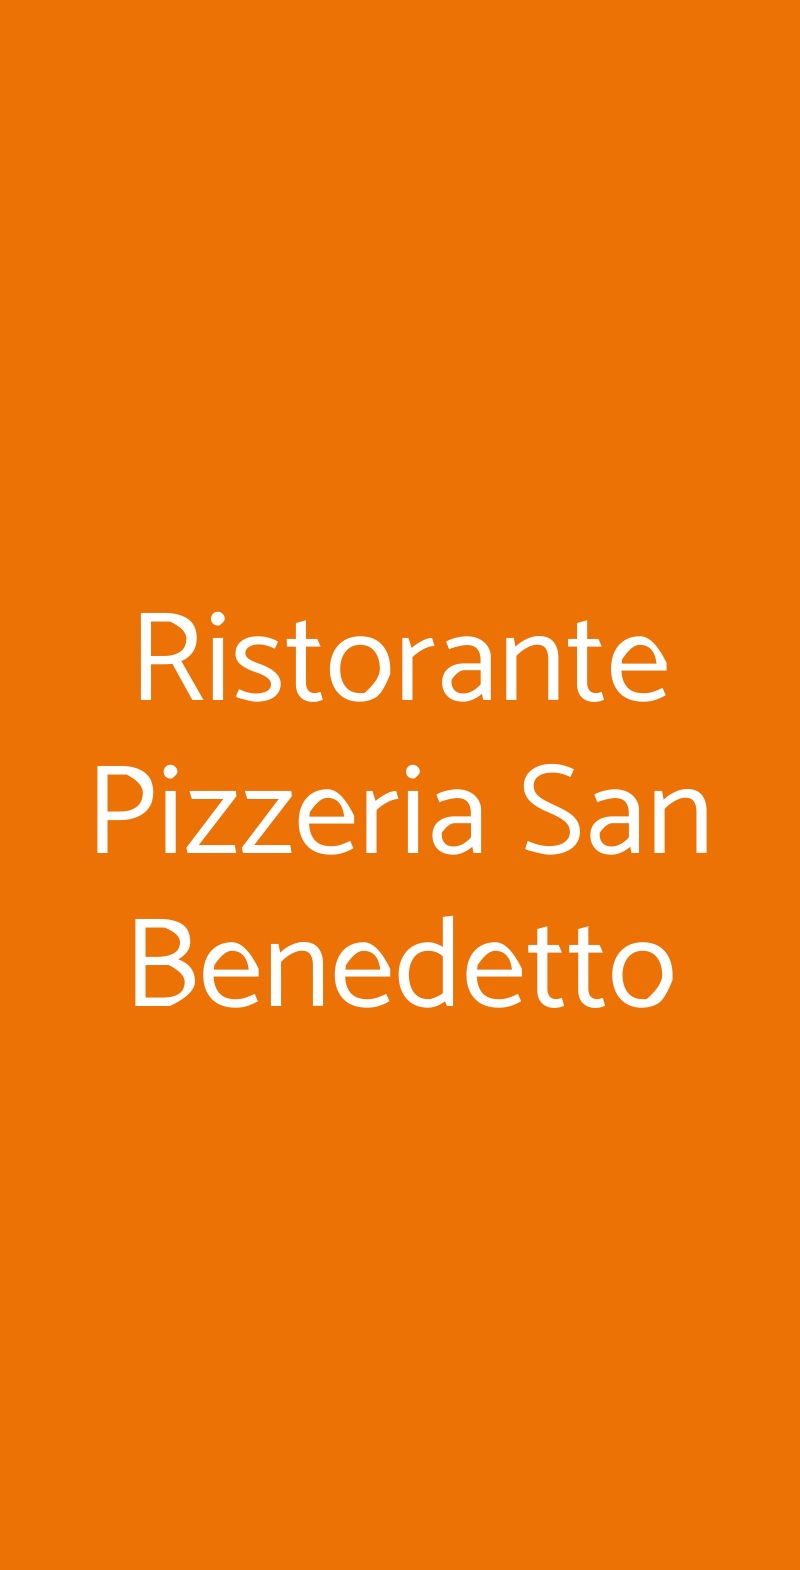 Ristorante Pizzeria San Benedetto Milano menù 1 pagina